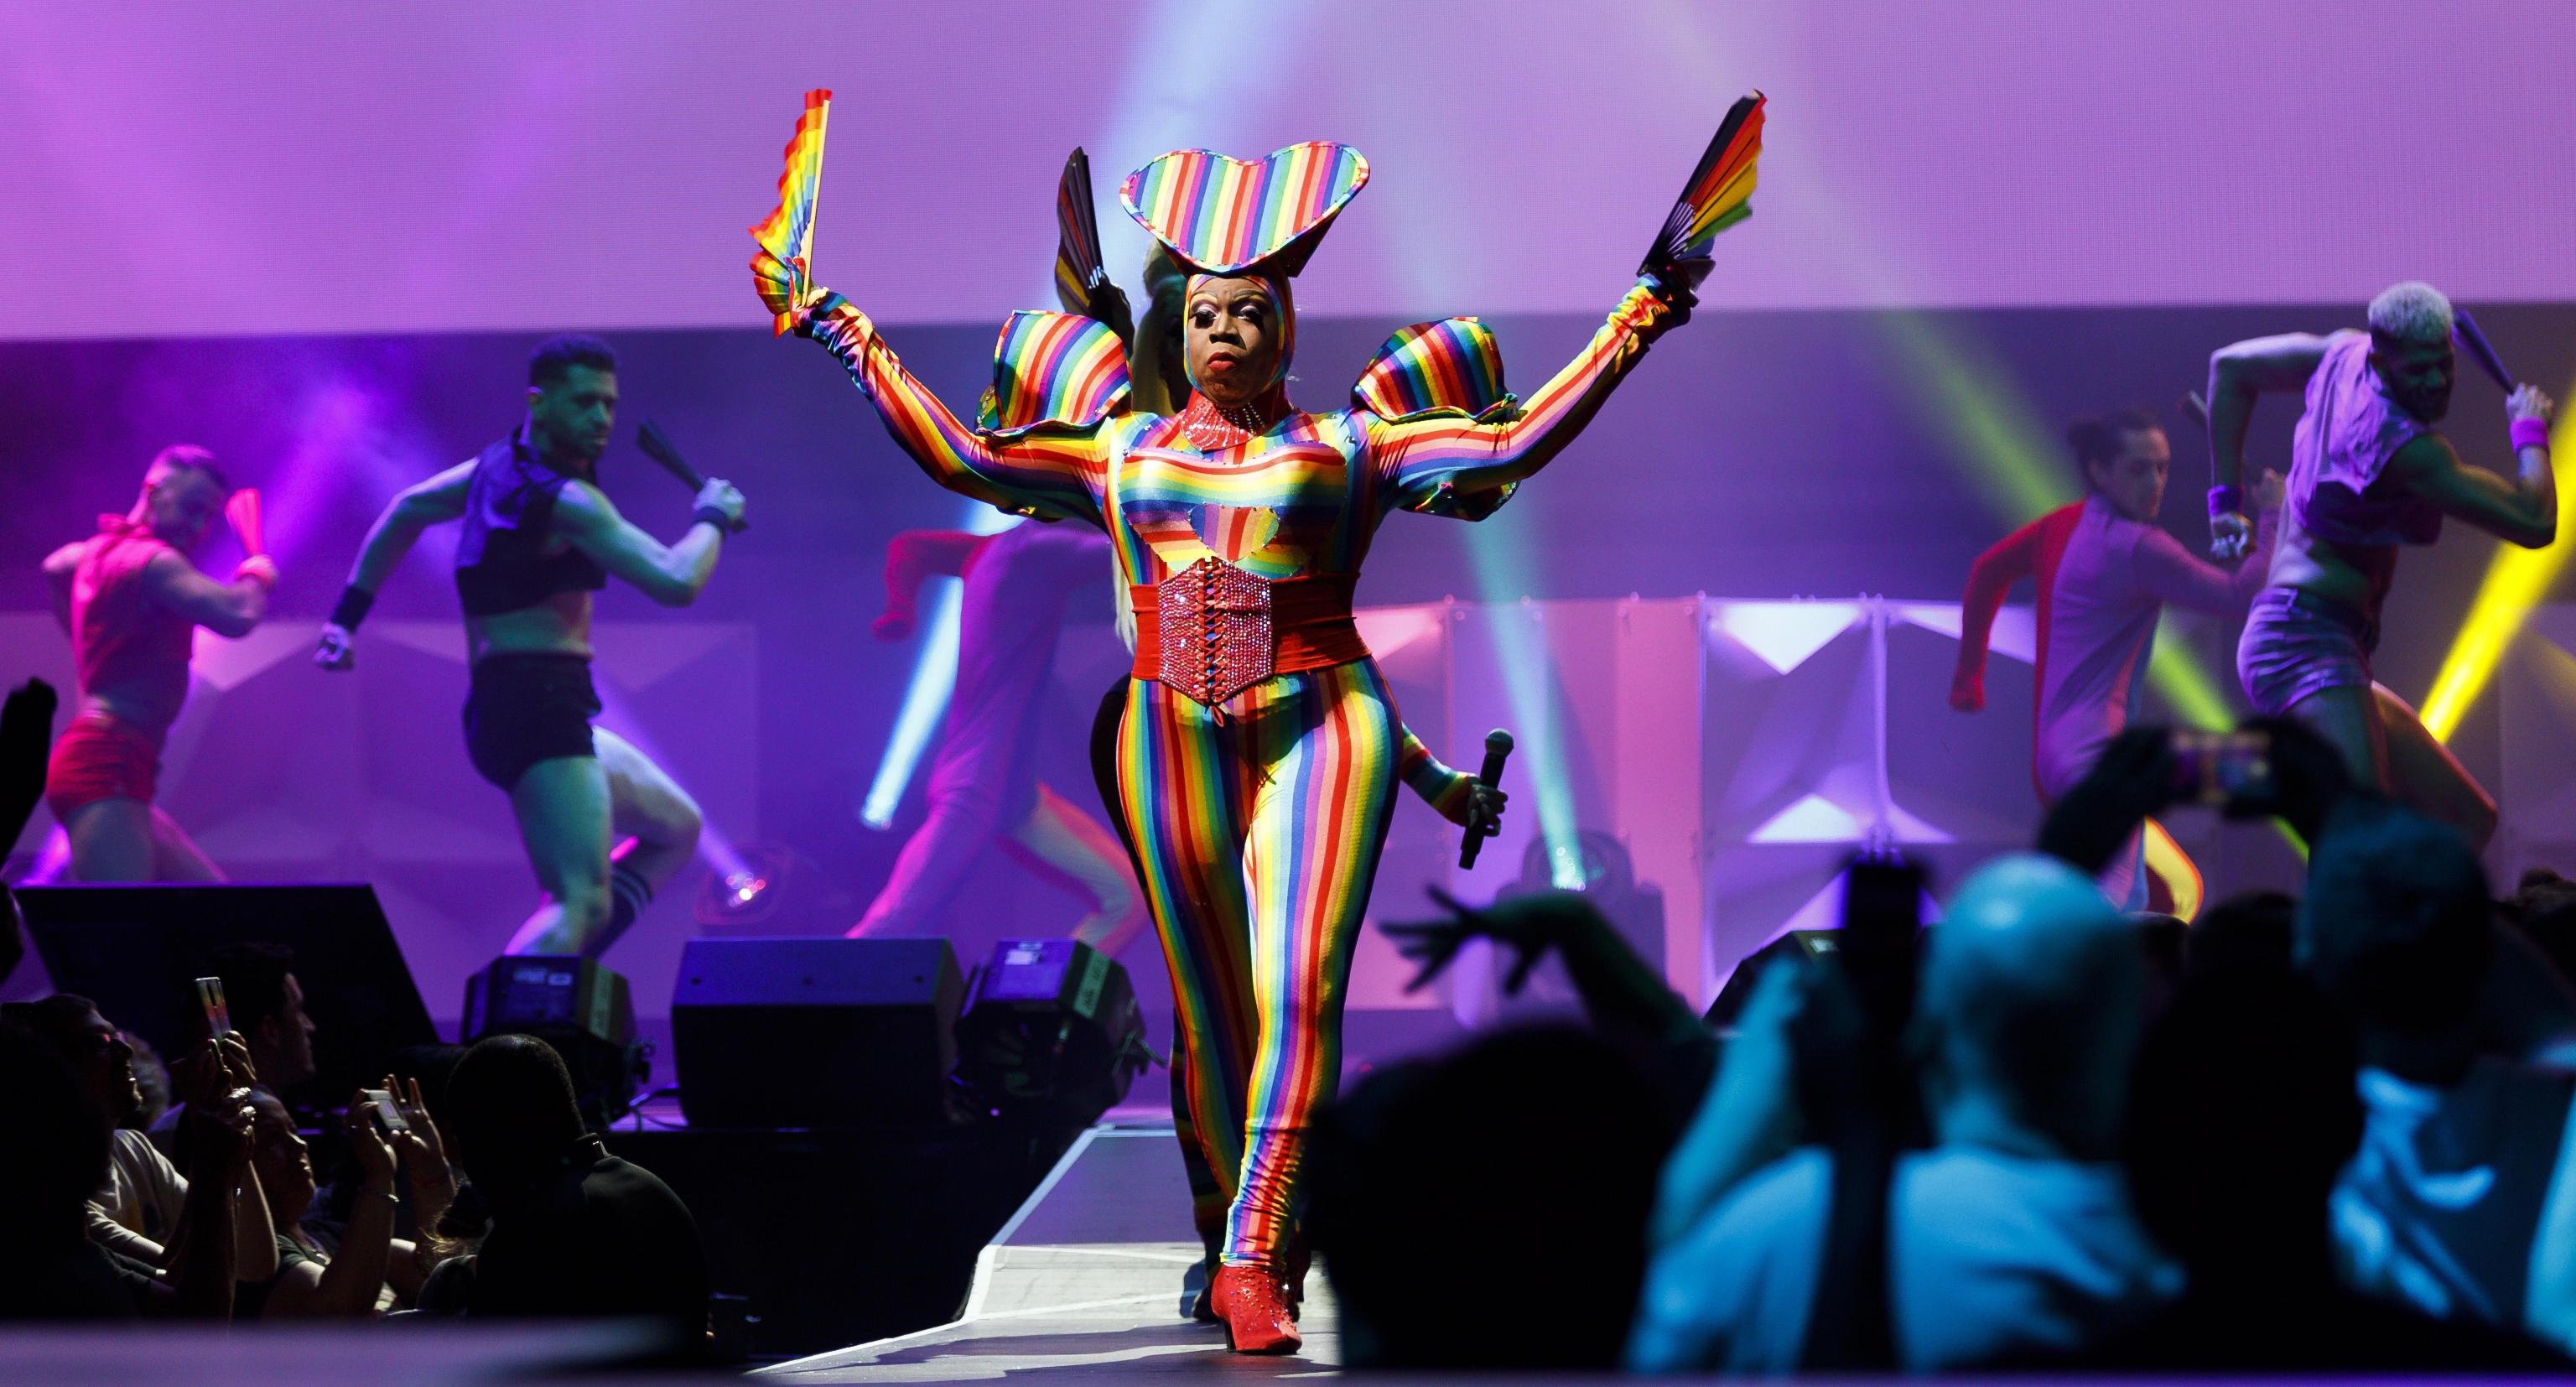 Una donna vestita dei colori della bandiera arcobaleno si esibisce sul palco del Barclays Center per la cerimonia di apertura del WorldPride 2019 (Foto di Epa/Justin Lane)